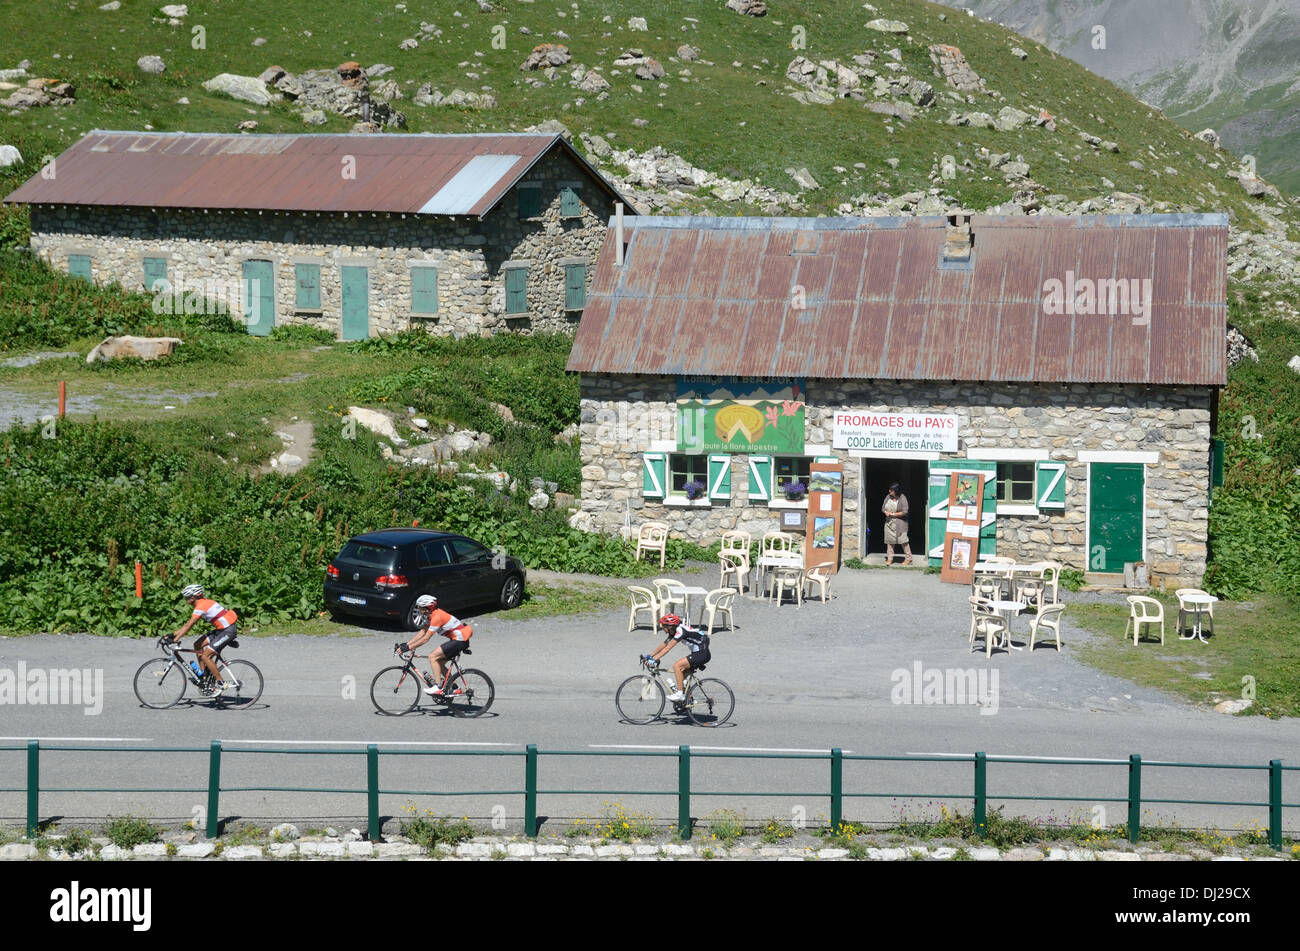 Radfahrer & Straßencafé oder Restaurant am Bergpass Col du Galibier französische Alpen Frankreich Stockfoto